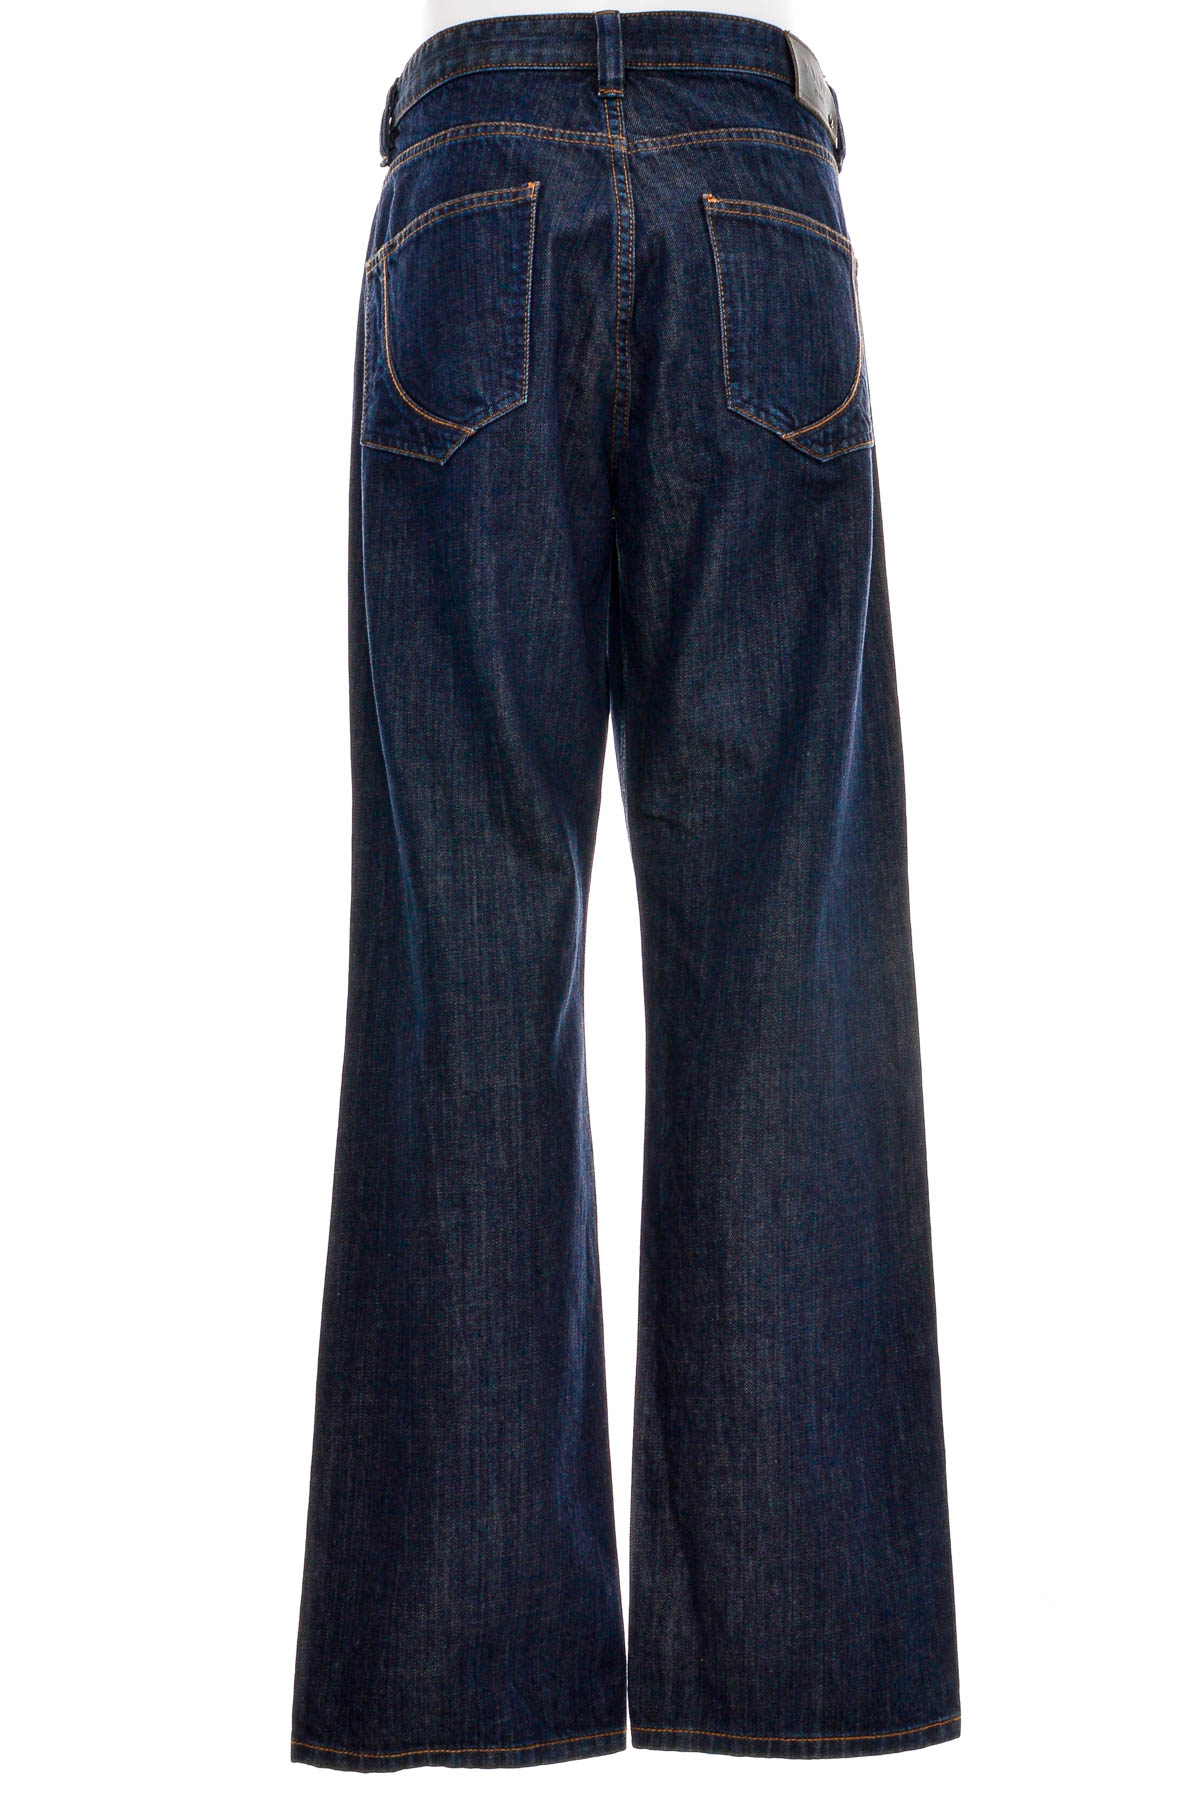 Men's jeans - JOOP! - 1